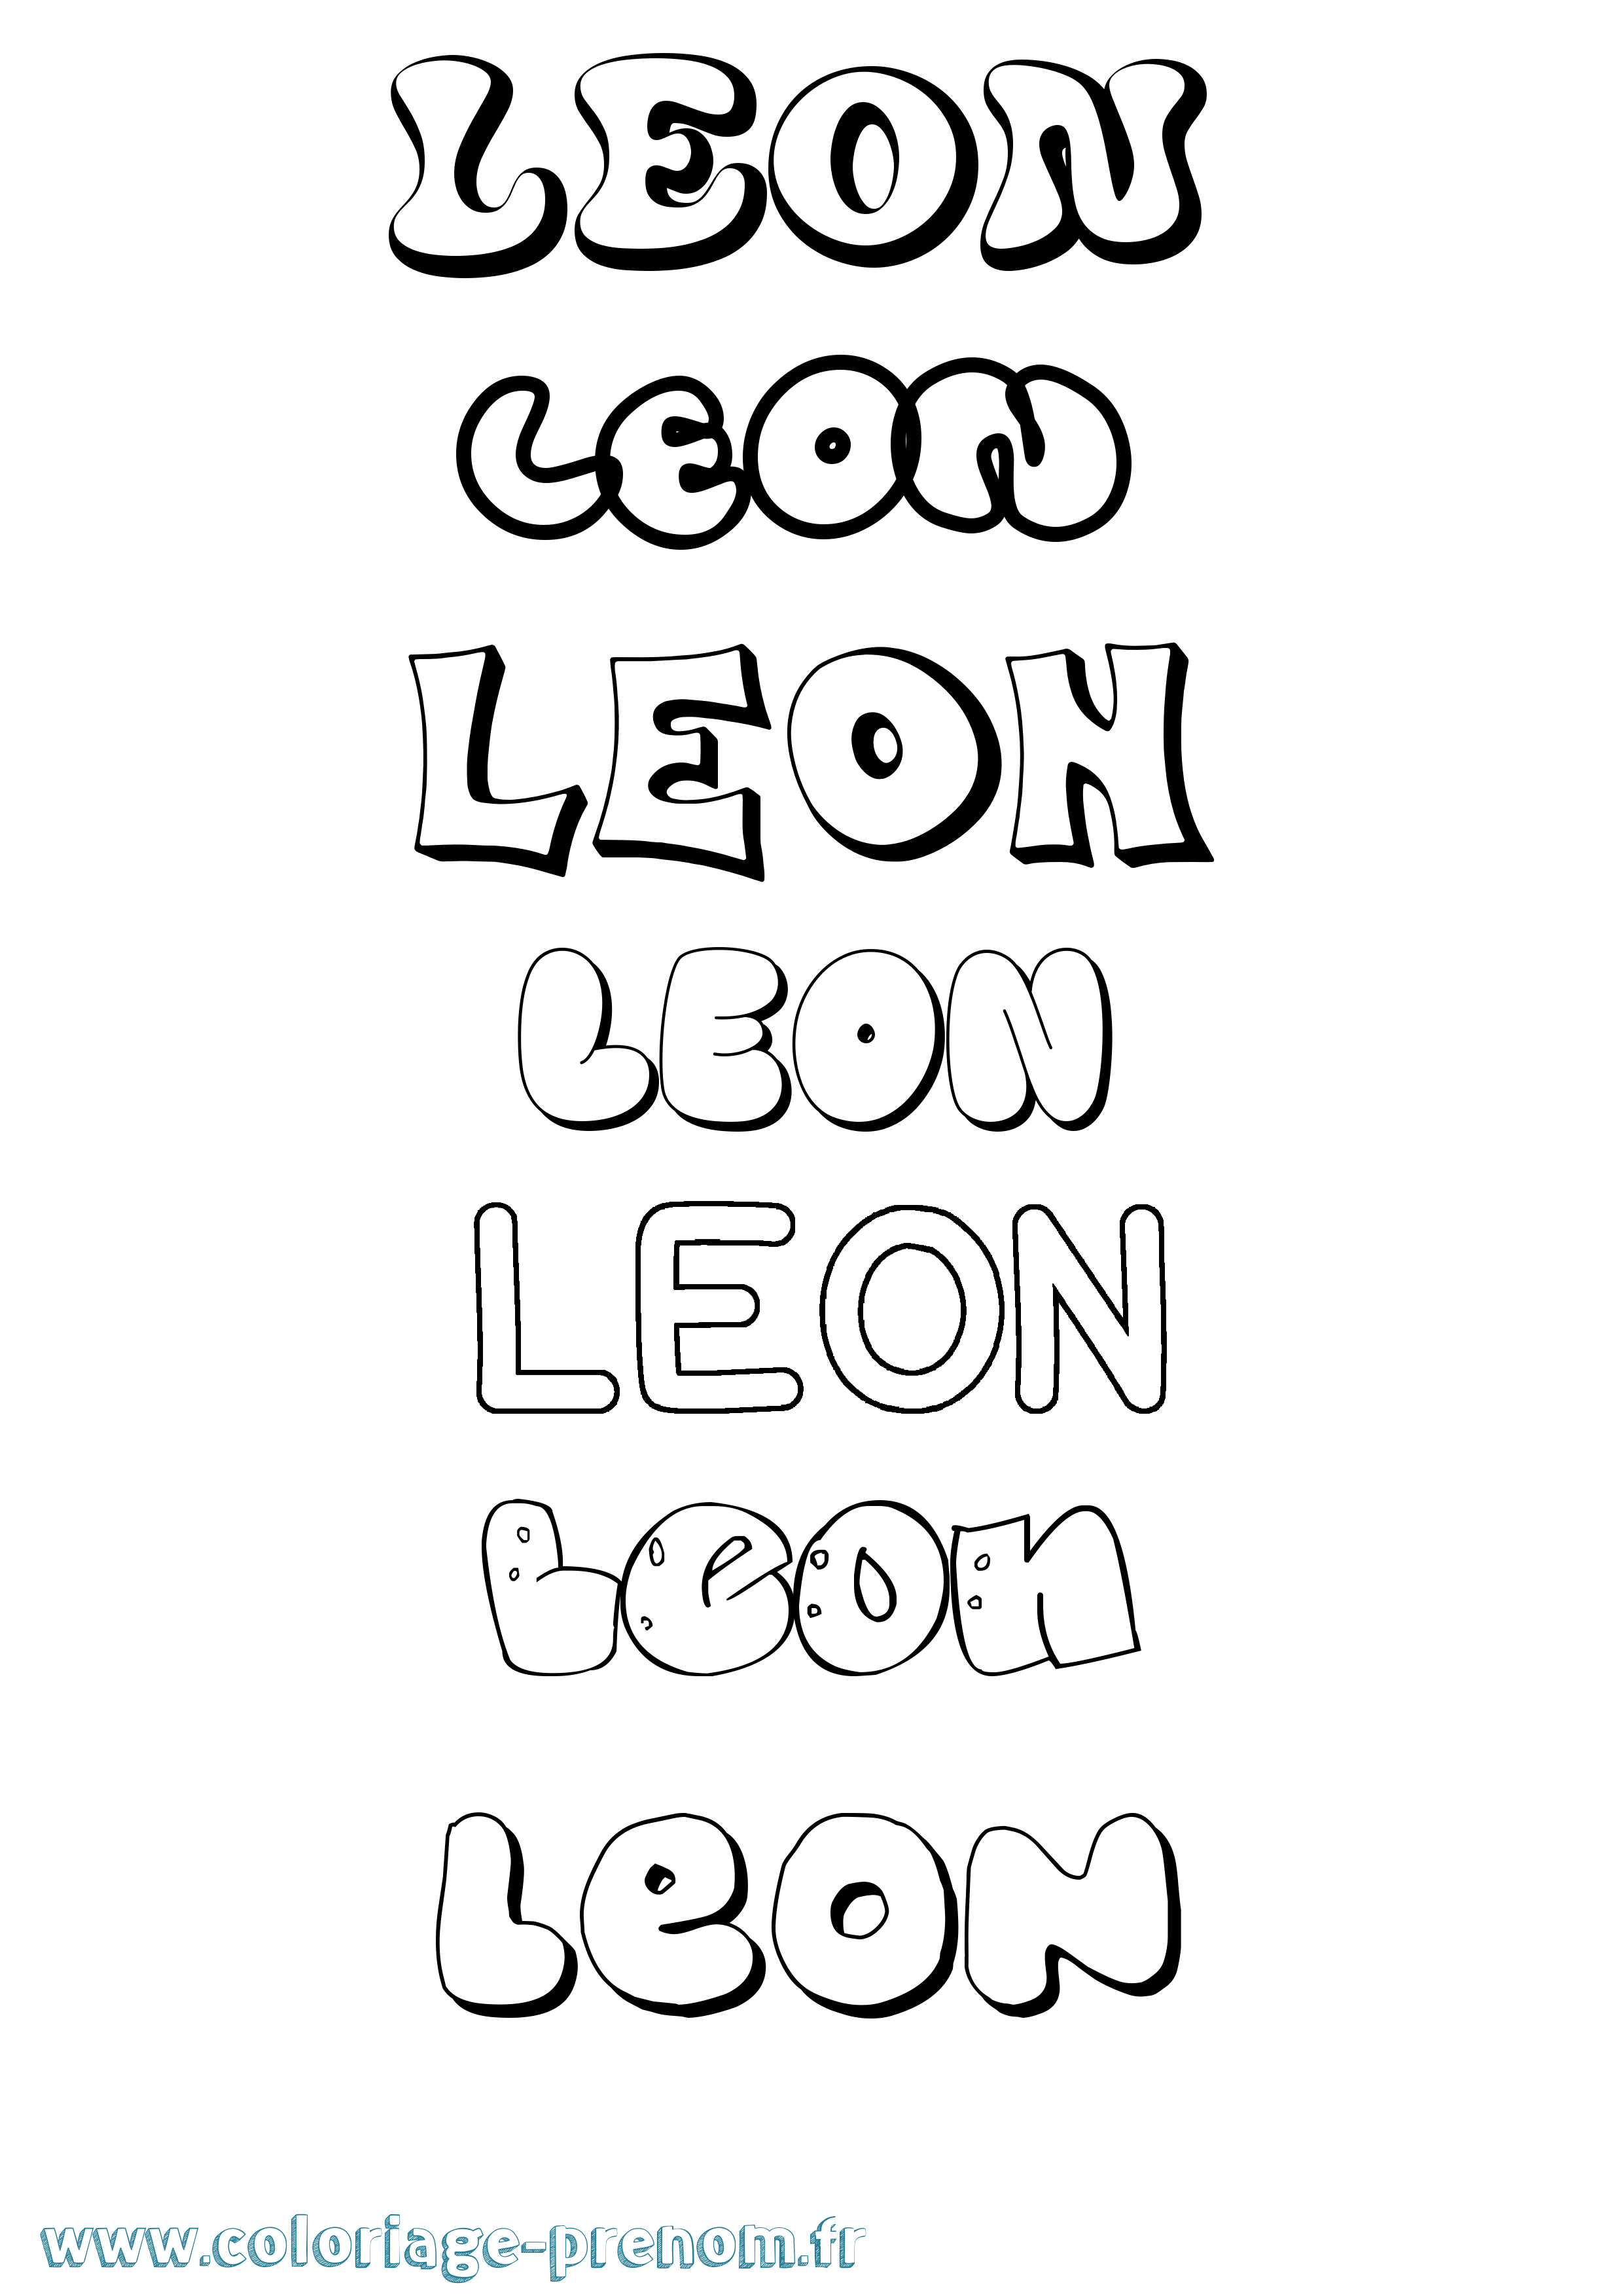 Coloriage prénom Leon Bubble